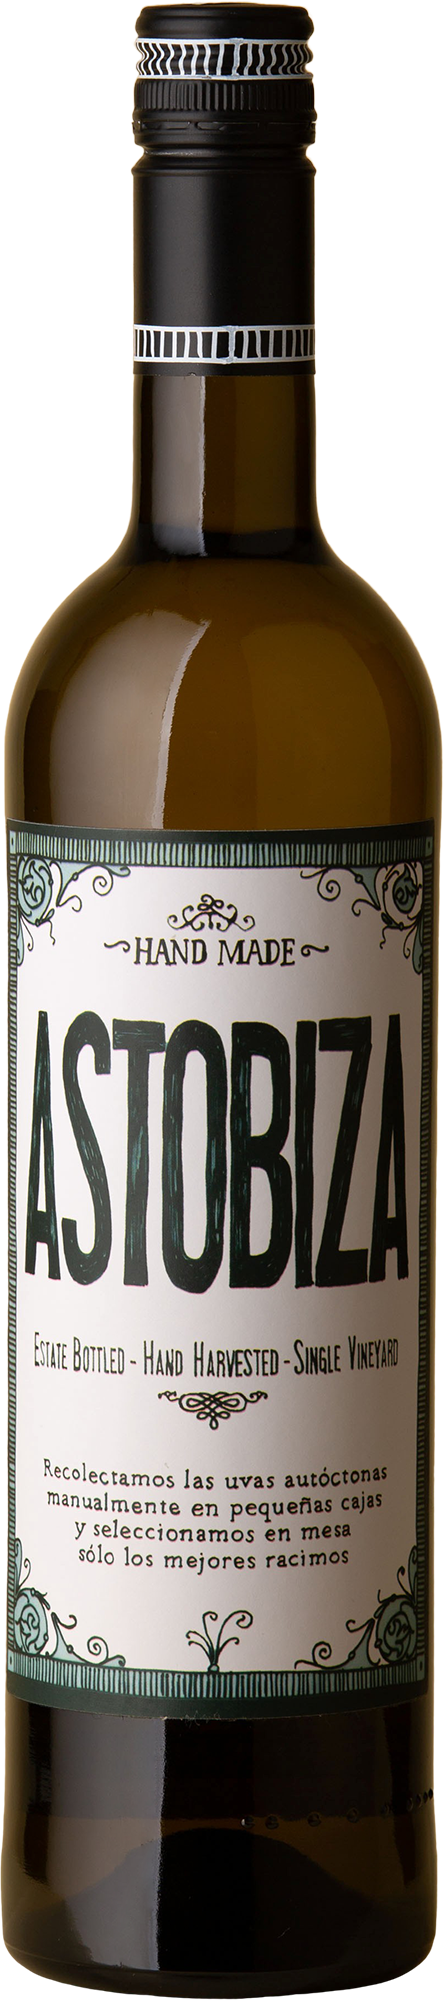 Astobiza - Txakoli 2018 White Wine